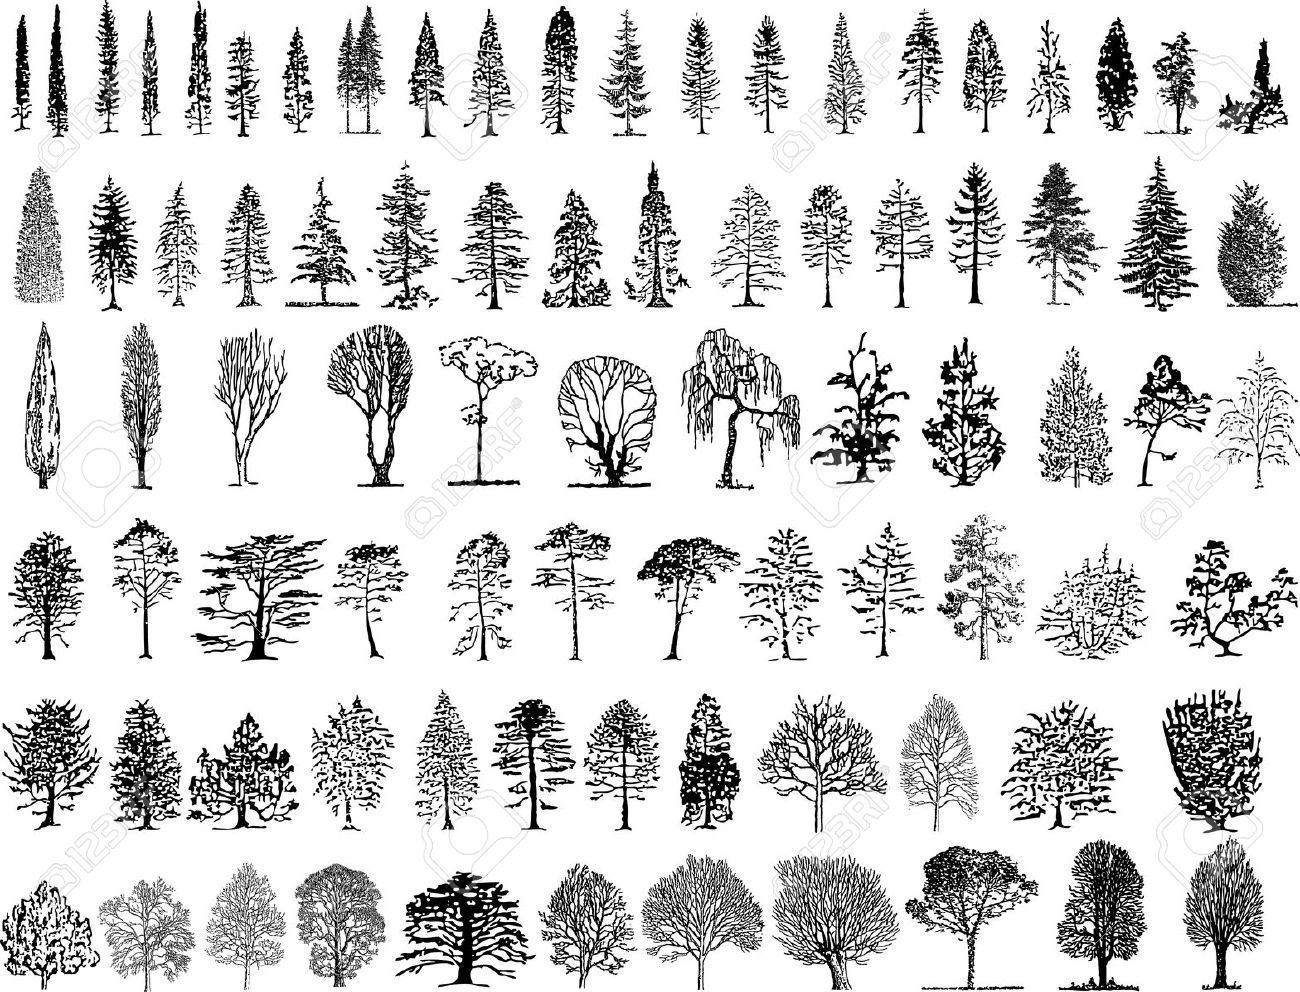 Tree silhouettes -   20 fir tree tattoo ideas